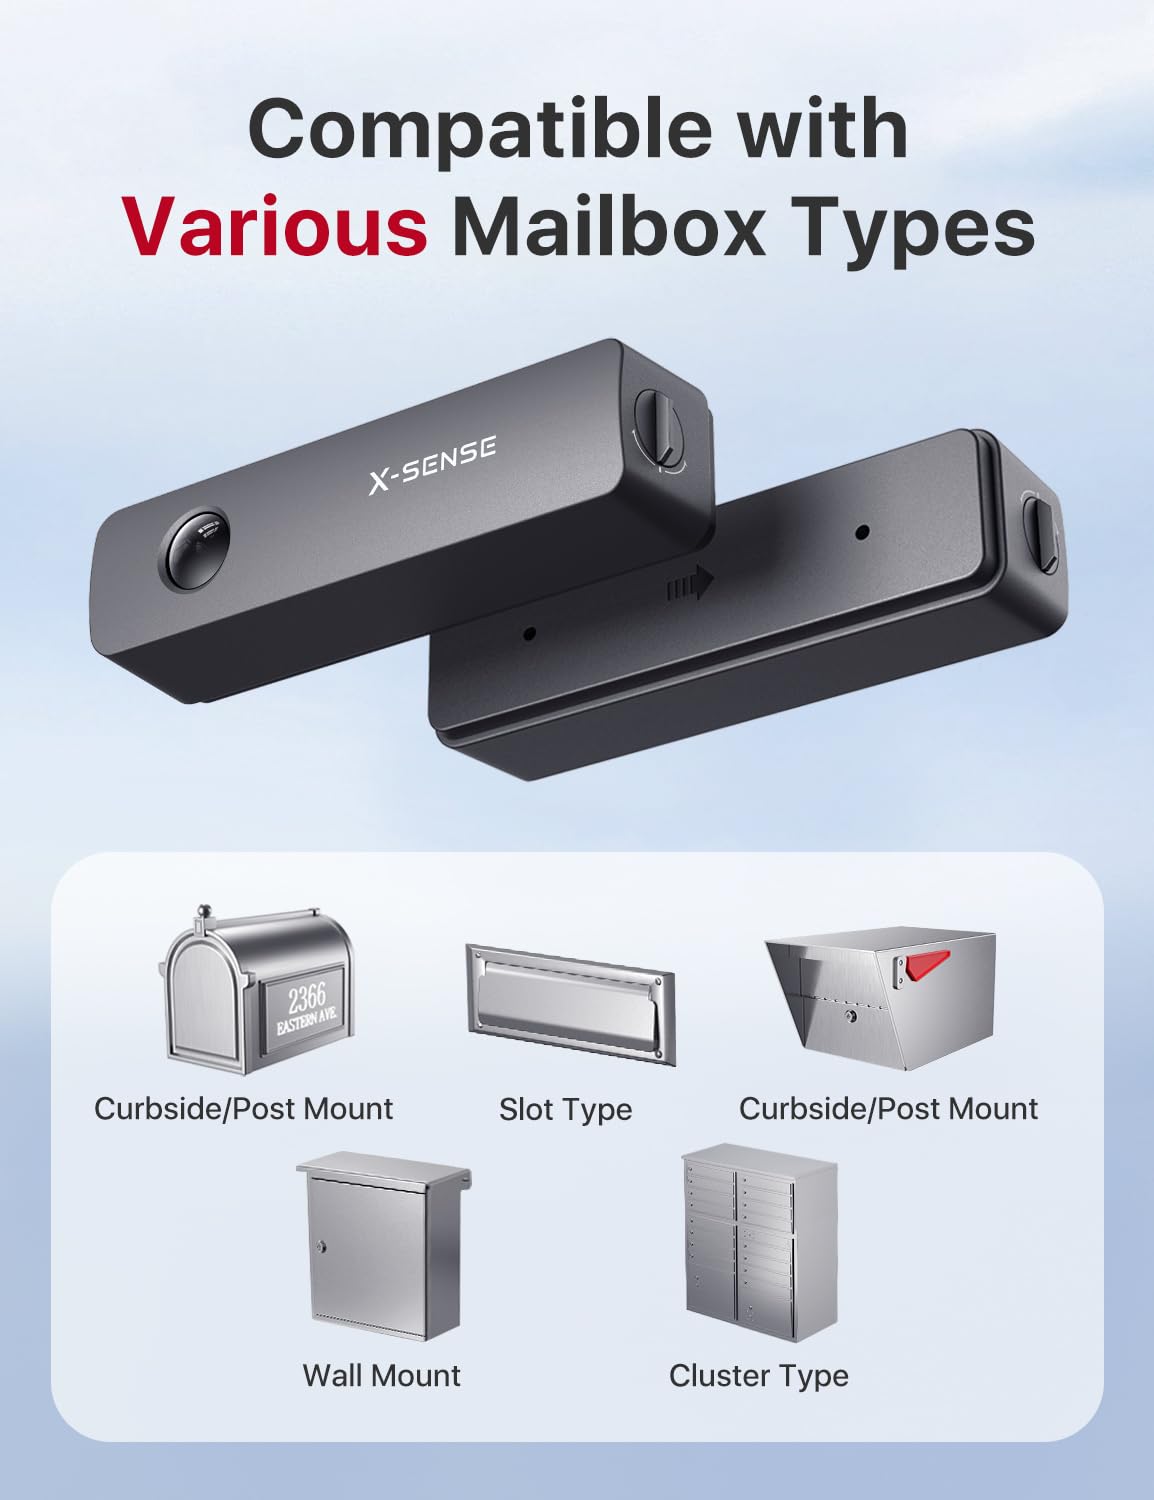 Mailbox Alert, X-Sense Smart Mailbox Alarm, 2,000 ft Wireless Long Range Mailbox Alert, Mailbox Sensor with SBS50 Base Station for Delivered Mail, SMA11